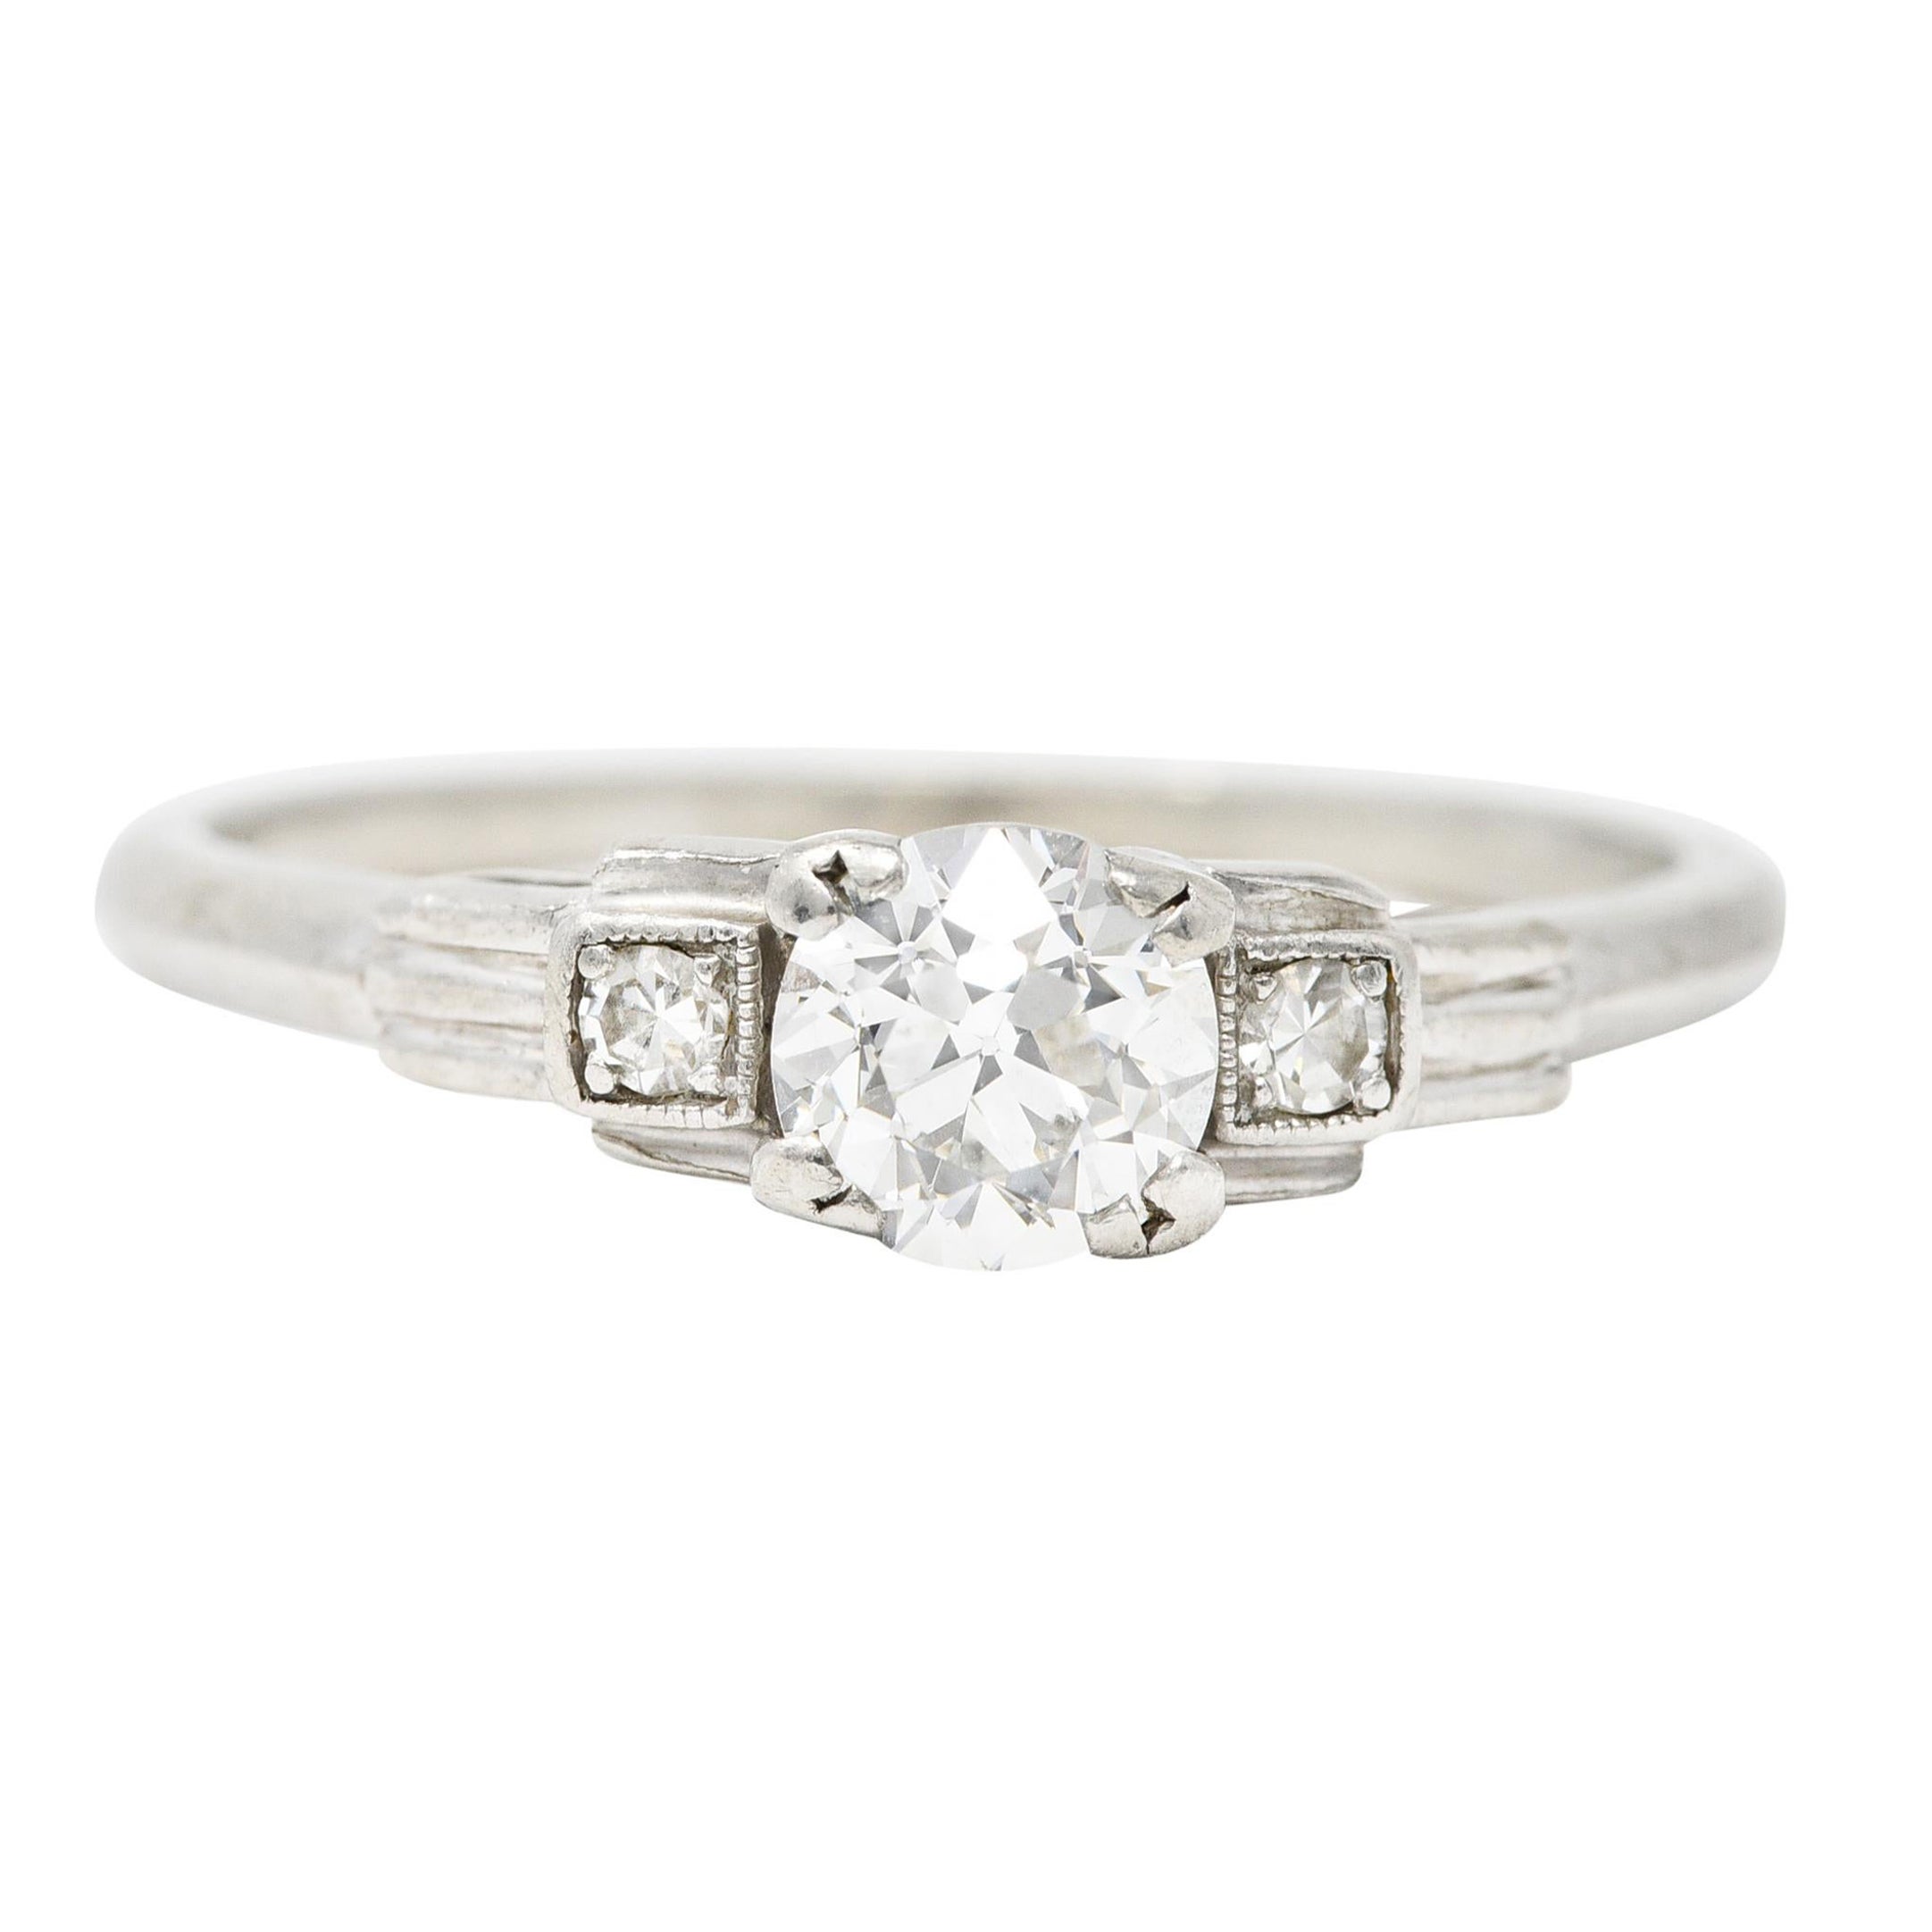 Late Art Deco 0.50 Carat Old European Cut Diamond Platinum Engagement Ring